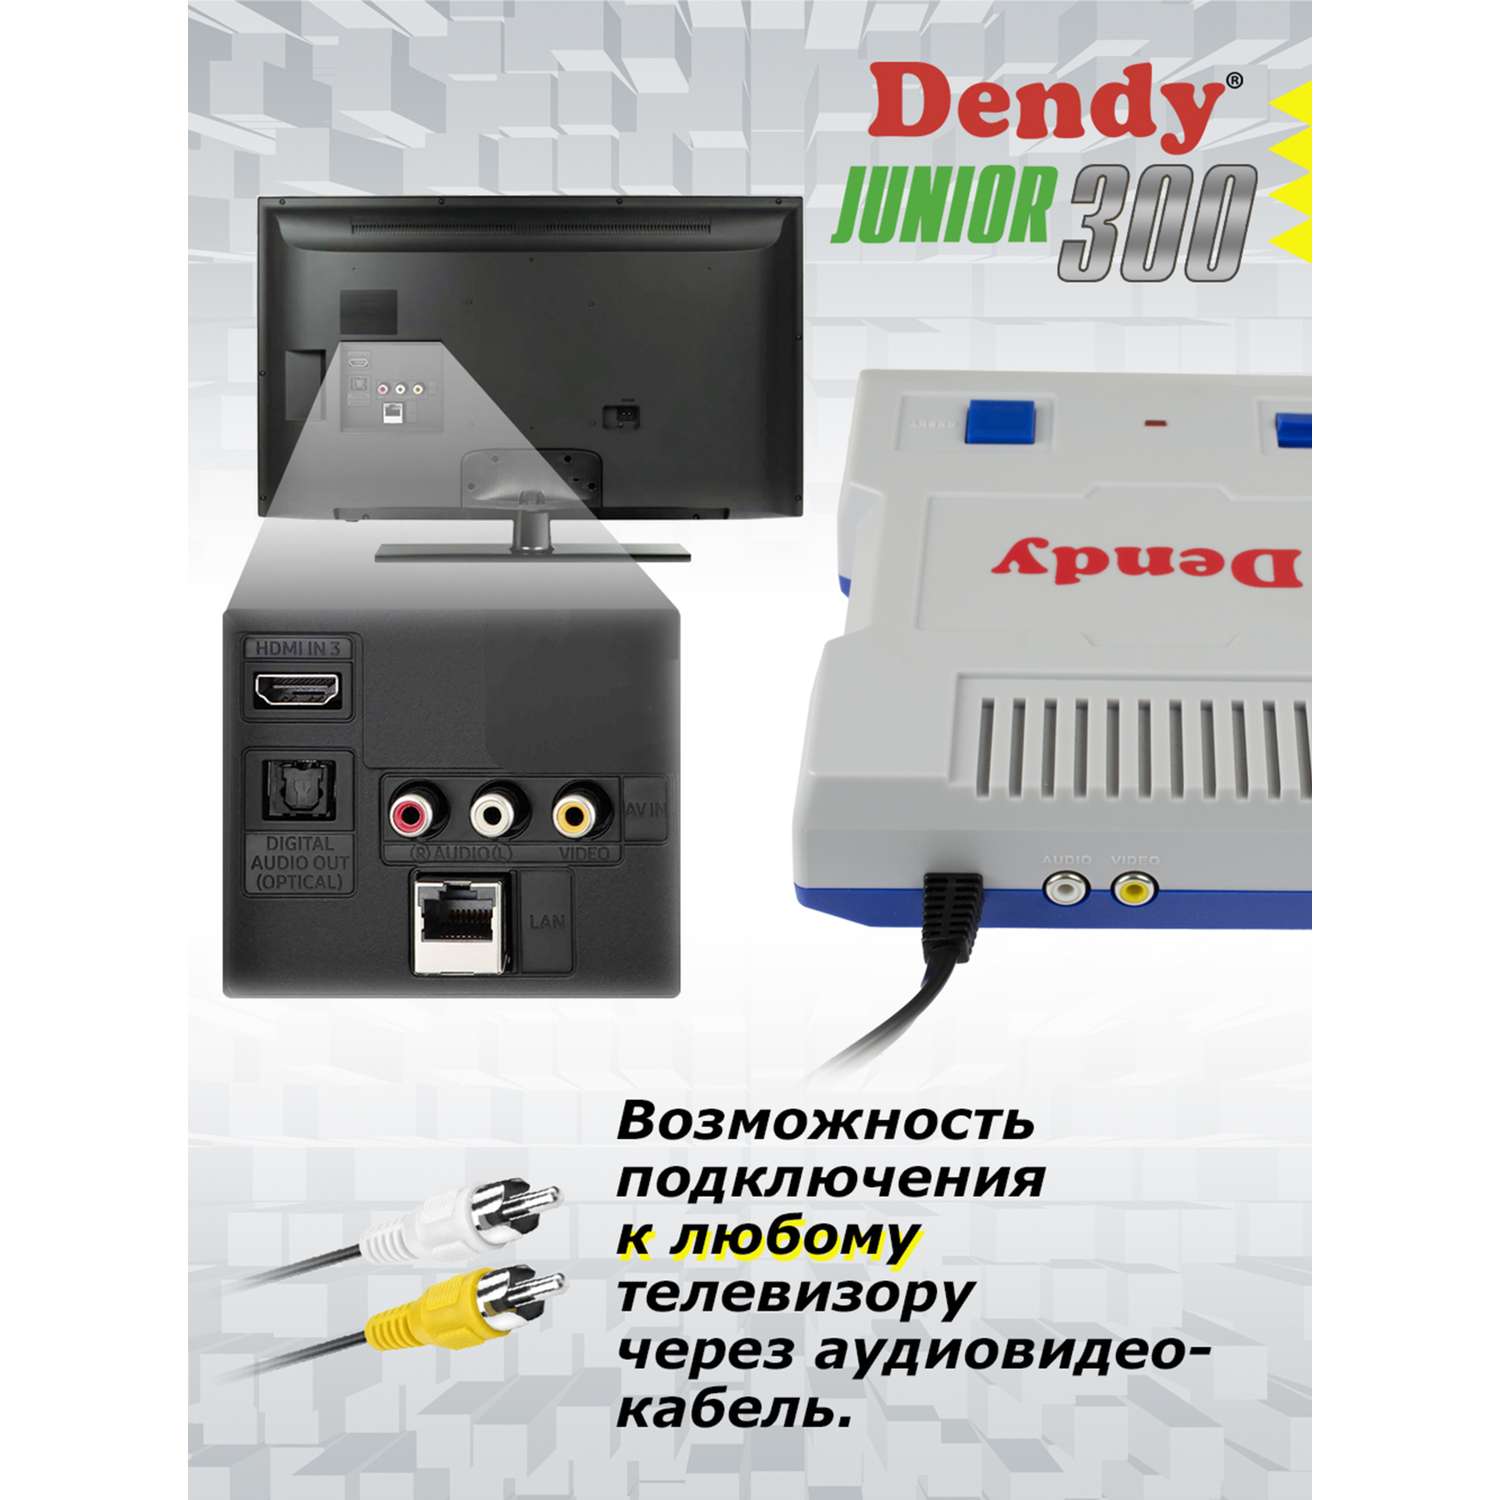 Игровая приставка Dendy Junior 300 встроенных игр (8-бит) - фото 7